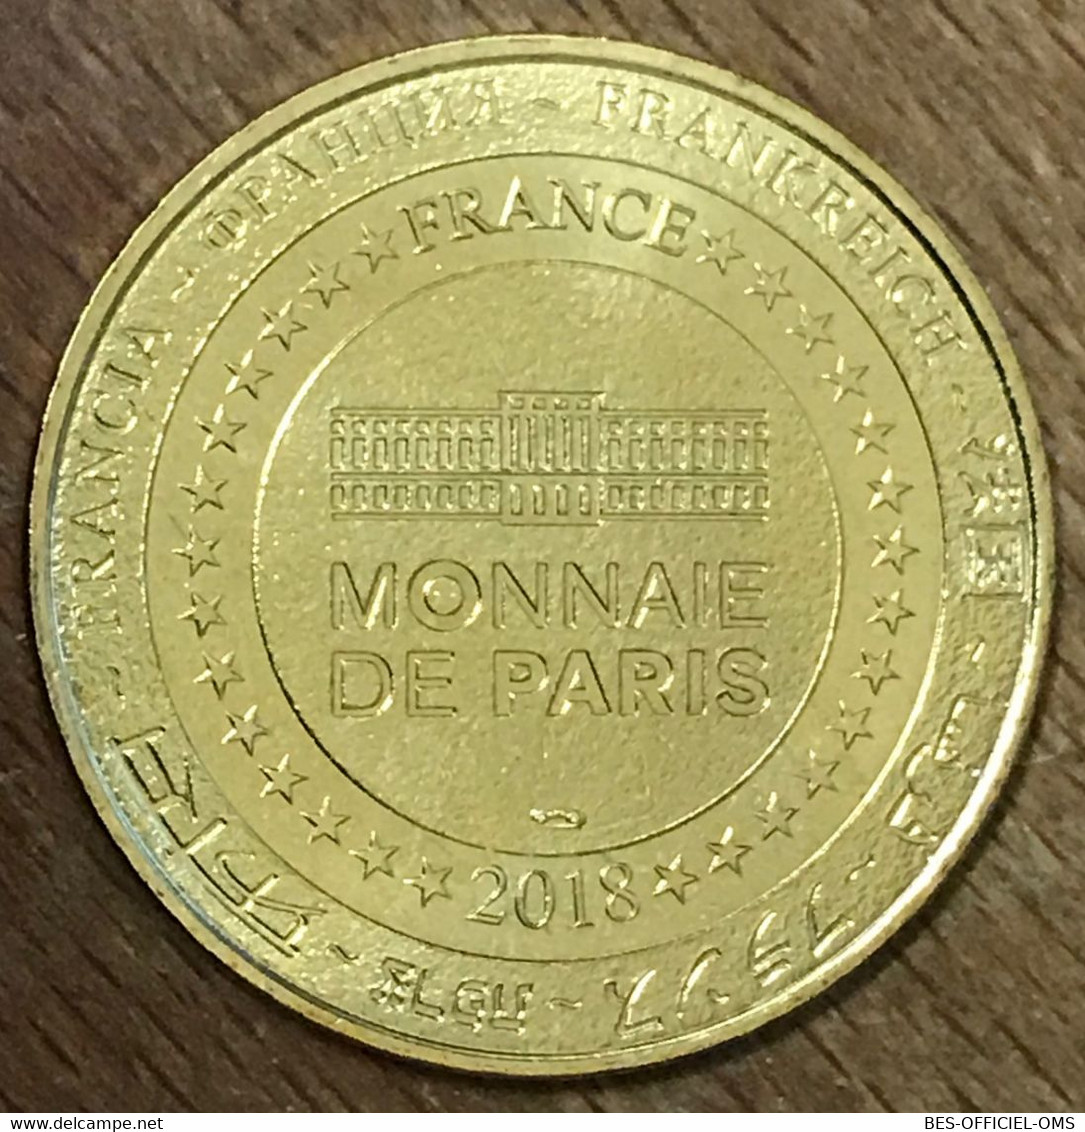 80 SAINT VALERY CHEMIN DE FER BAIE DE SOMME TRAIN MDP 2018 MÉDAILLE MONNAIE DE PARIS JETON TOURISTIQUE MEDALS COIN TOKEN - 2018